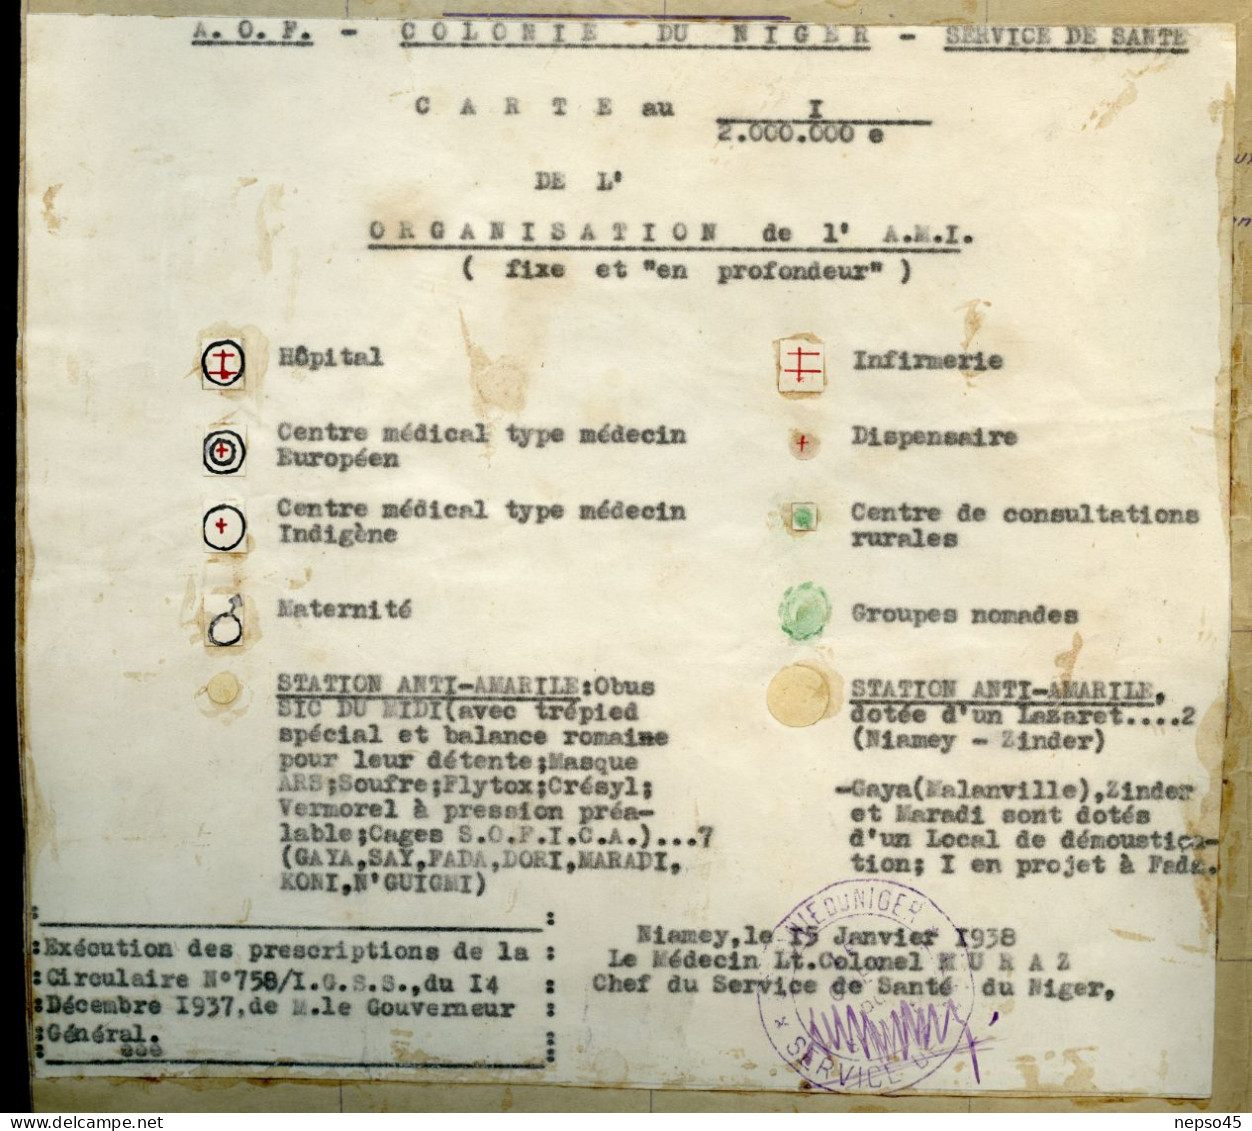 Colonie du Niger.Niamey 15 janvier 1938.Médecin Lt.Colonel Euraz Service de Santé.Carte Géographique